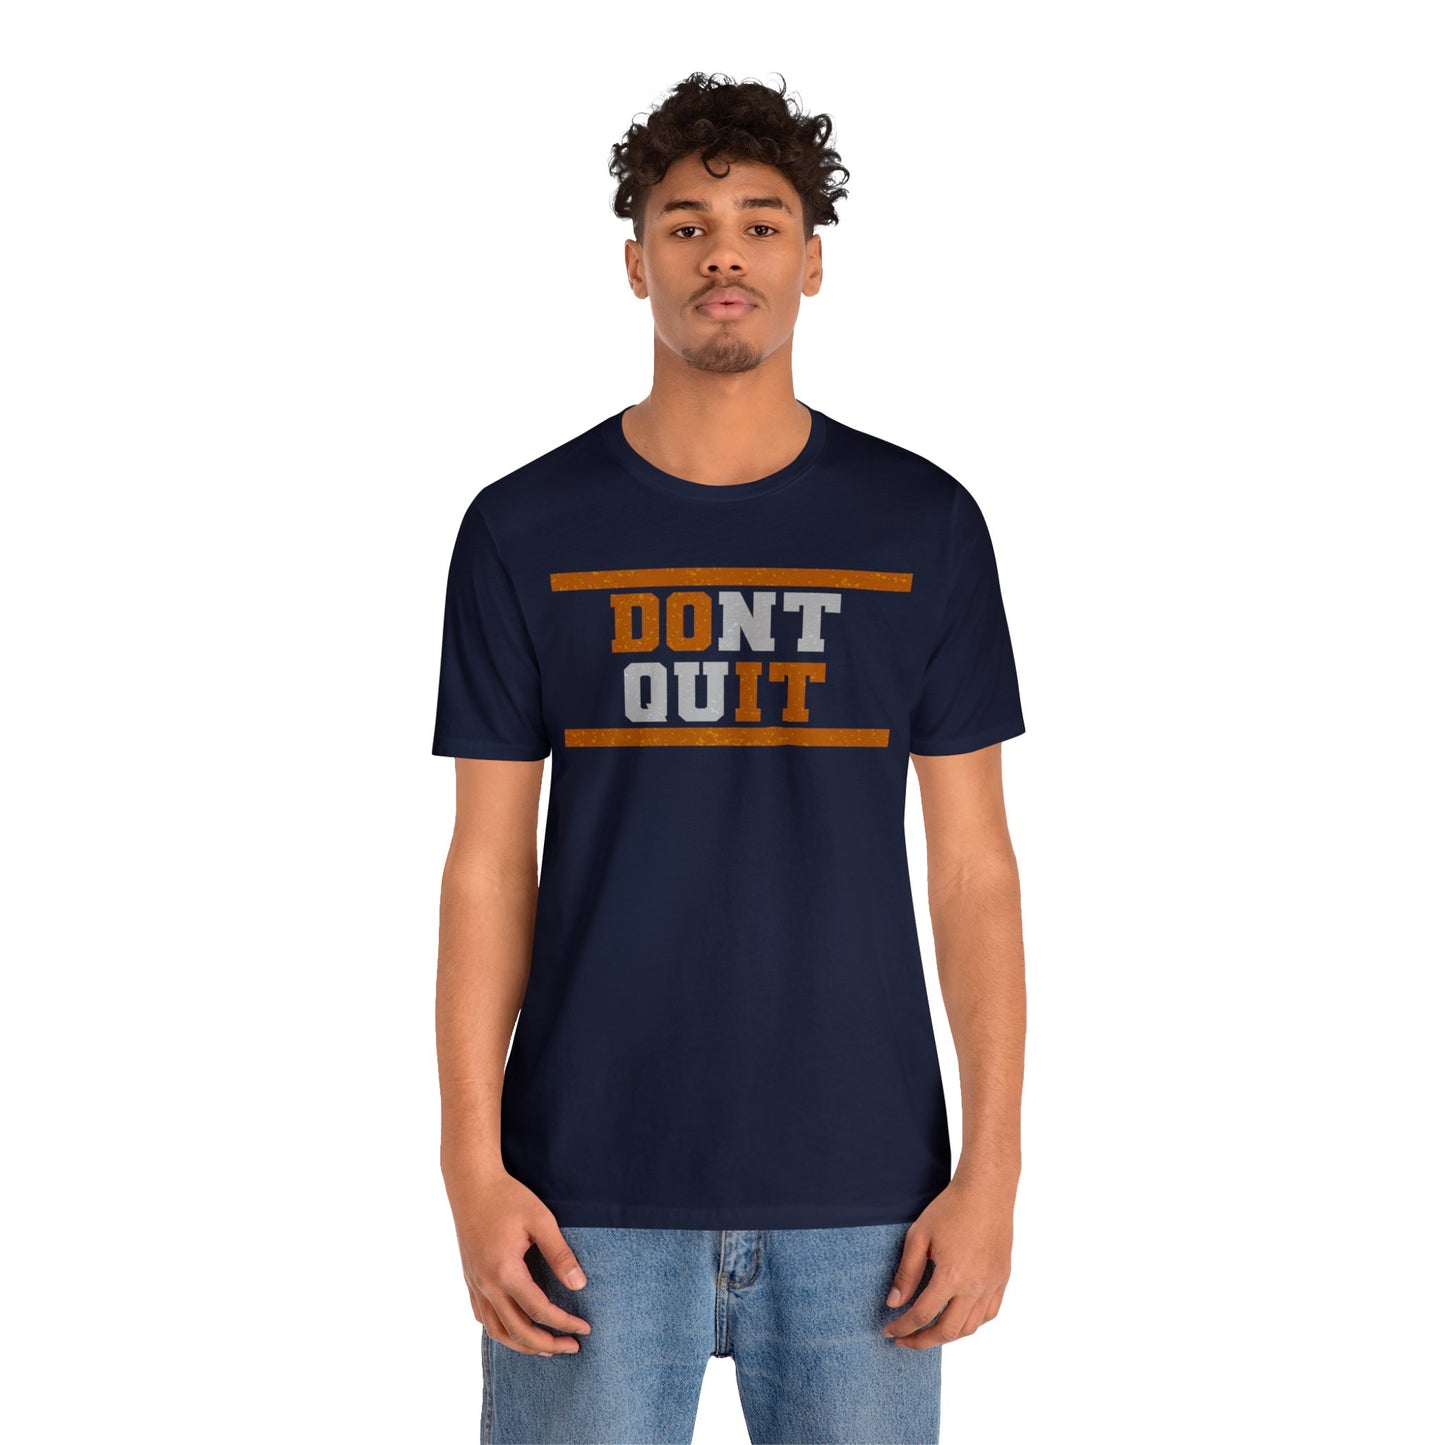 Don't Quit, Do It - T-shirt